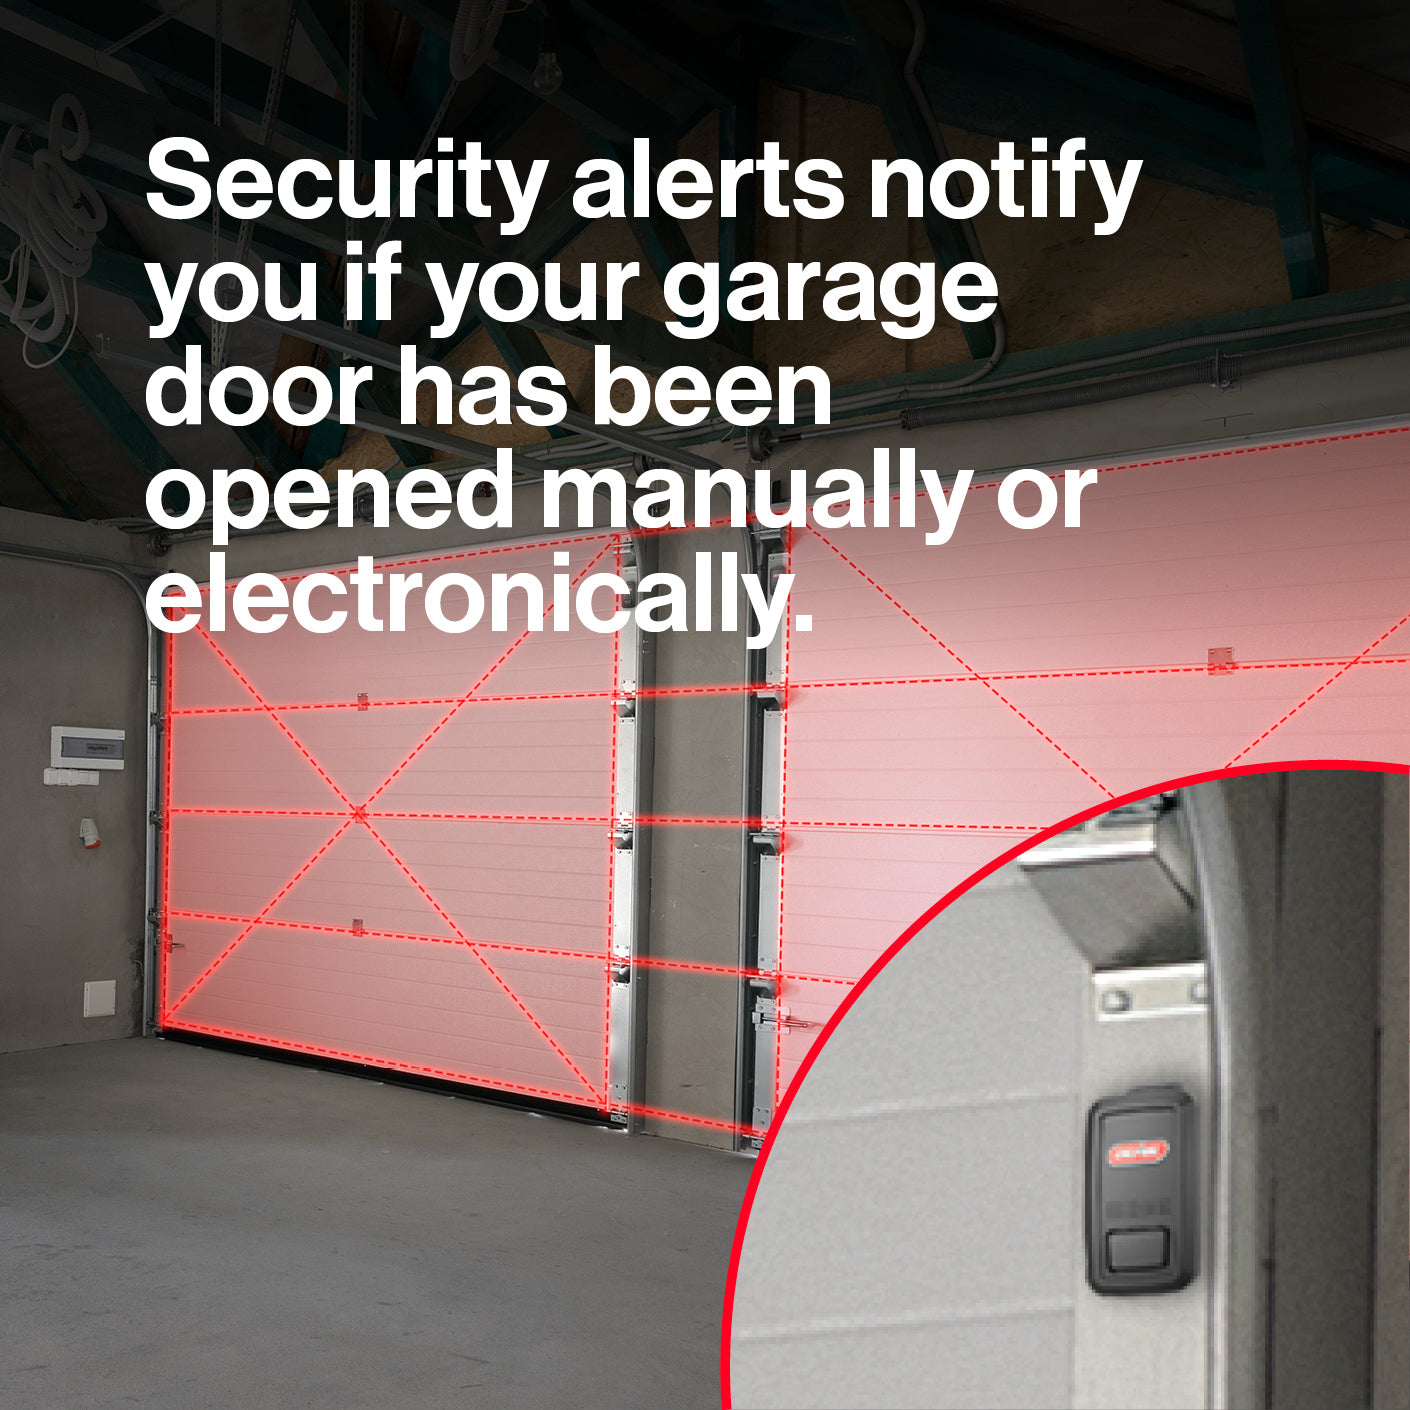 Aladdin Connect Smart garage door controller notifies you if your garage door has been opened on your smart device